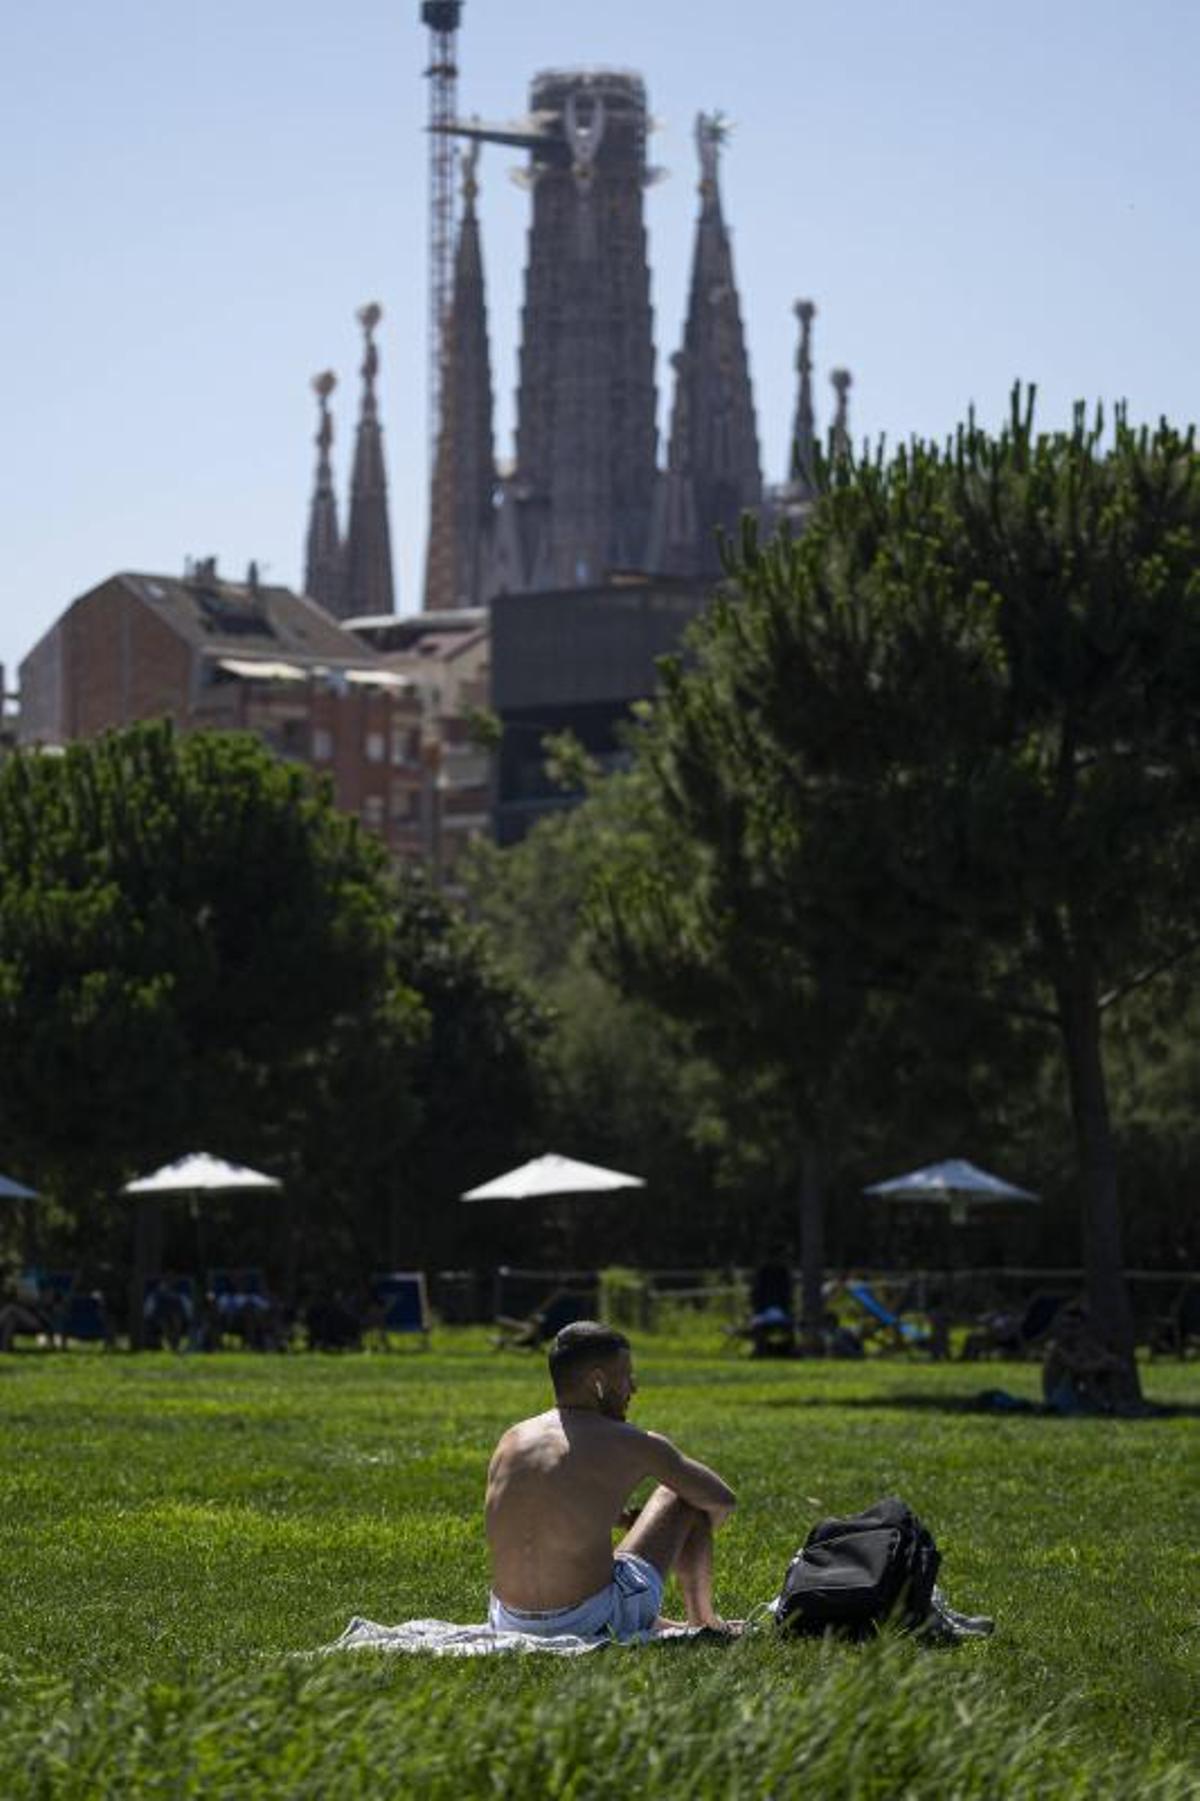 Expats y turistas toman el sol en parques urbanos